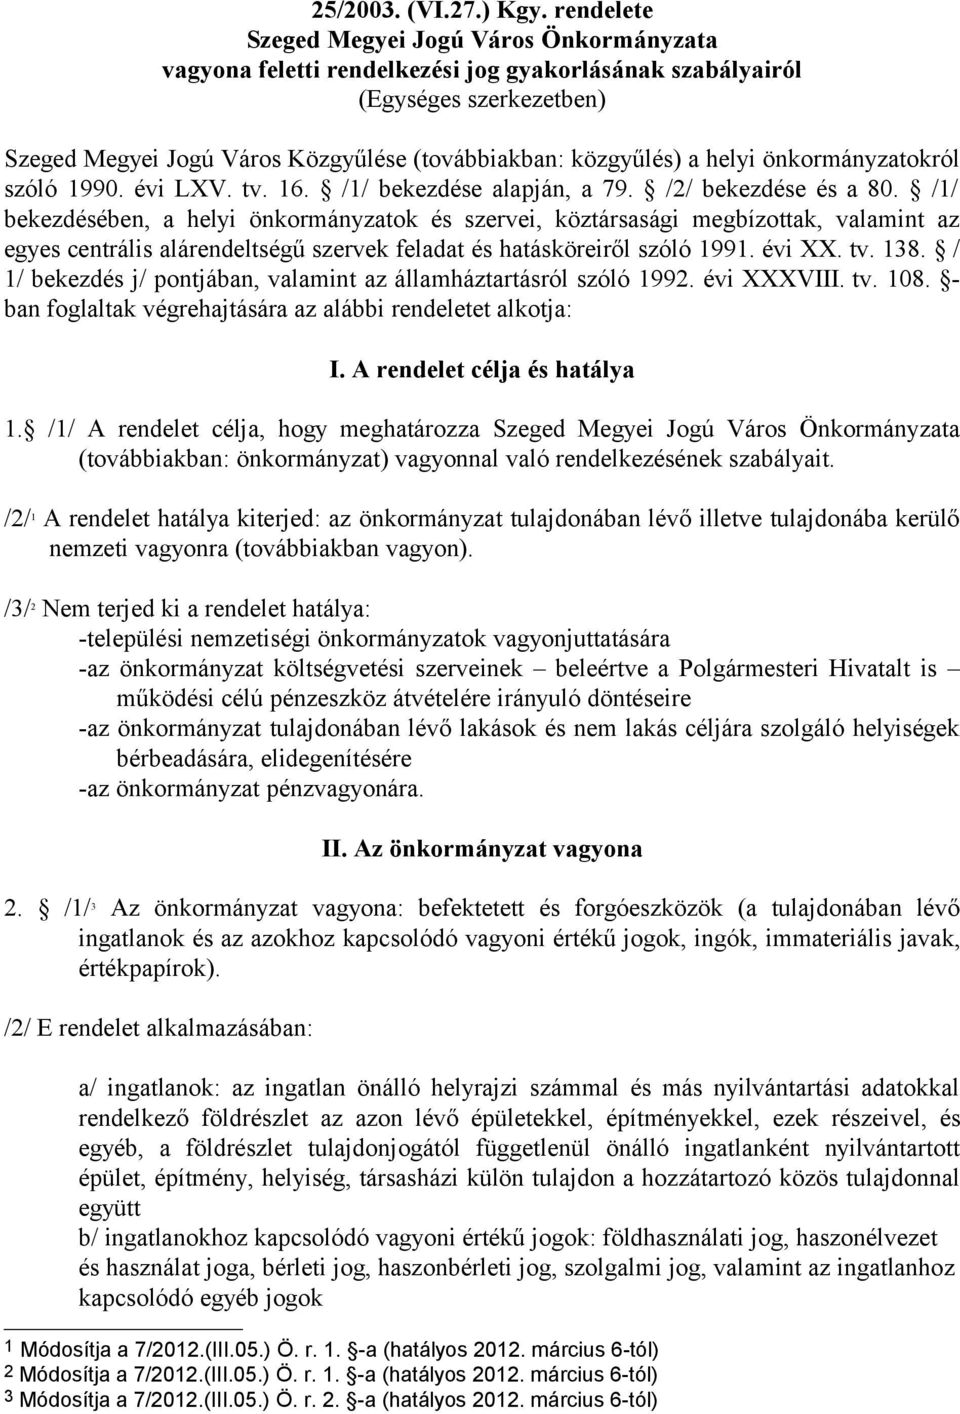 helyi önkormányzatokról szóló 1990. évi LXV. tv. 16. /1/ bekezdése alapján, a 79. /2/ bekezdése és a 80.